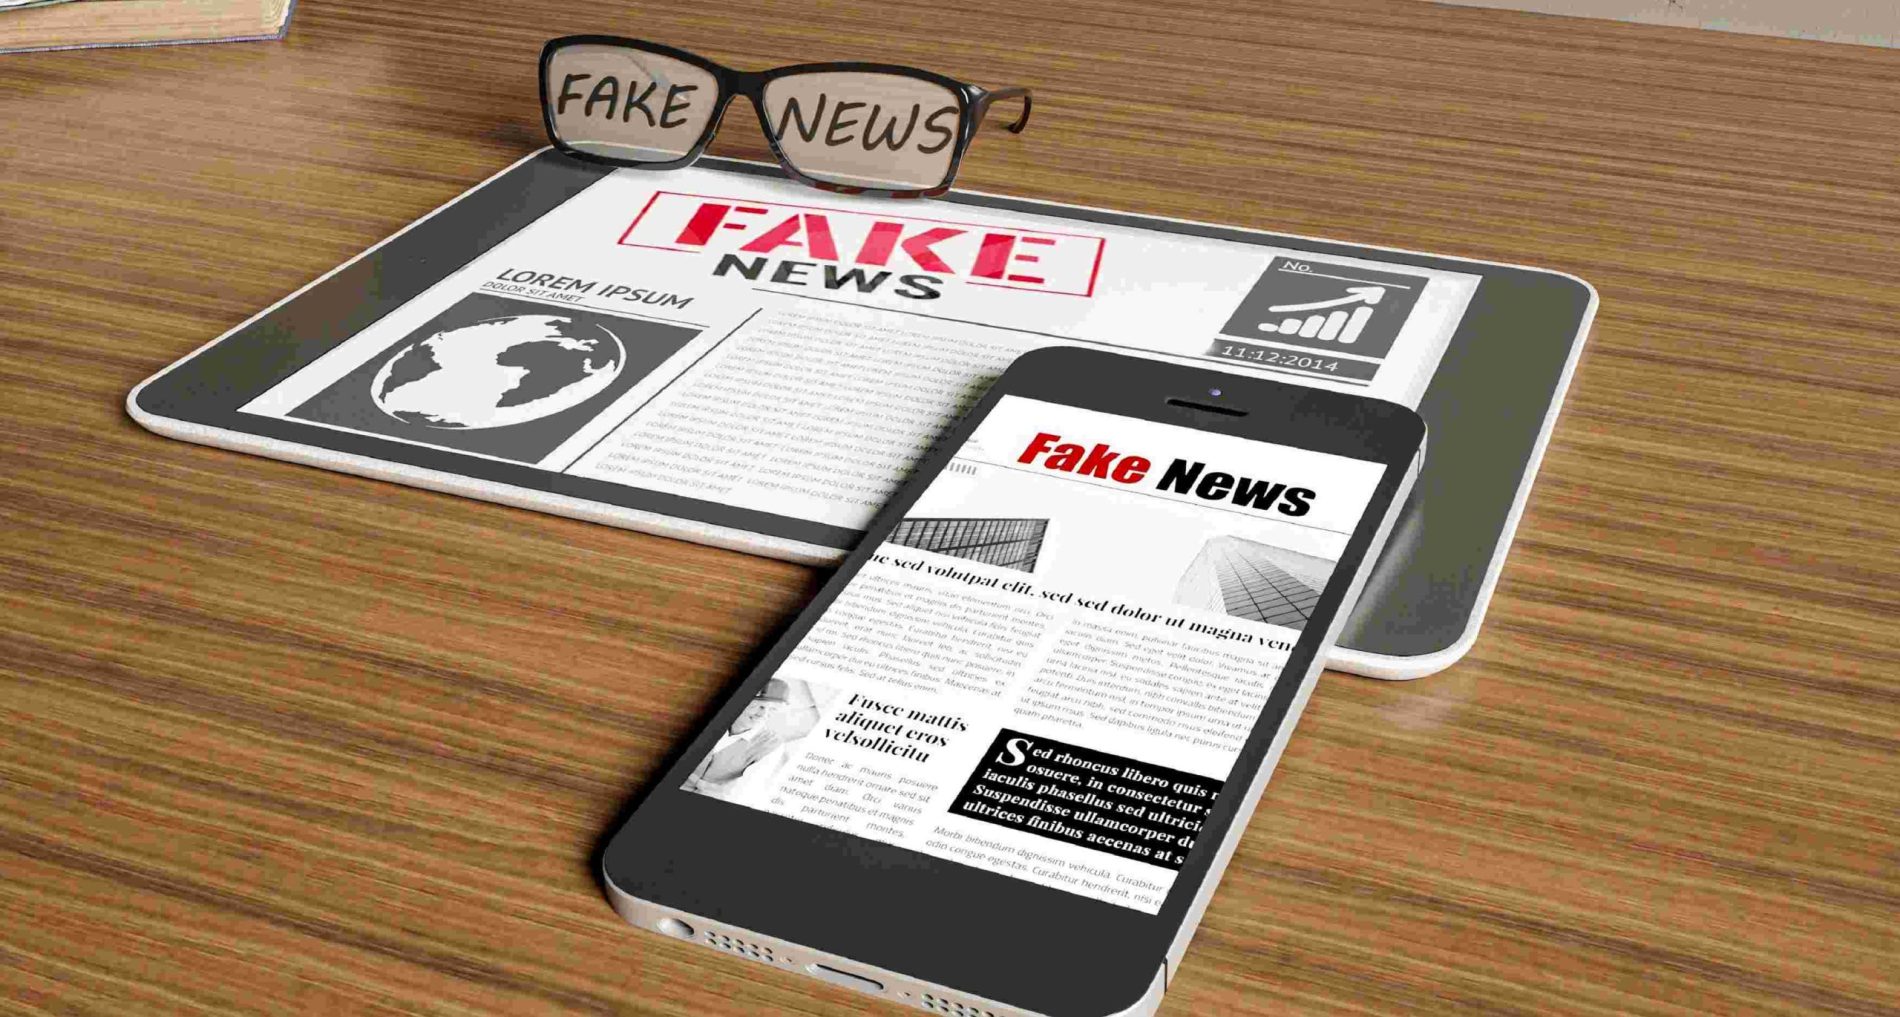 5 recomendaciones para no caer en las fake news